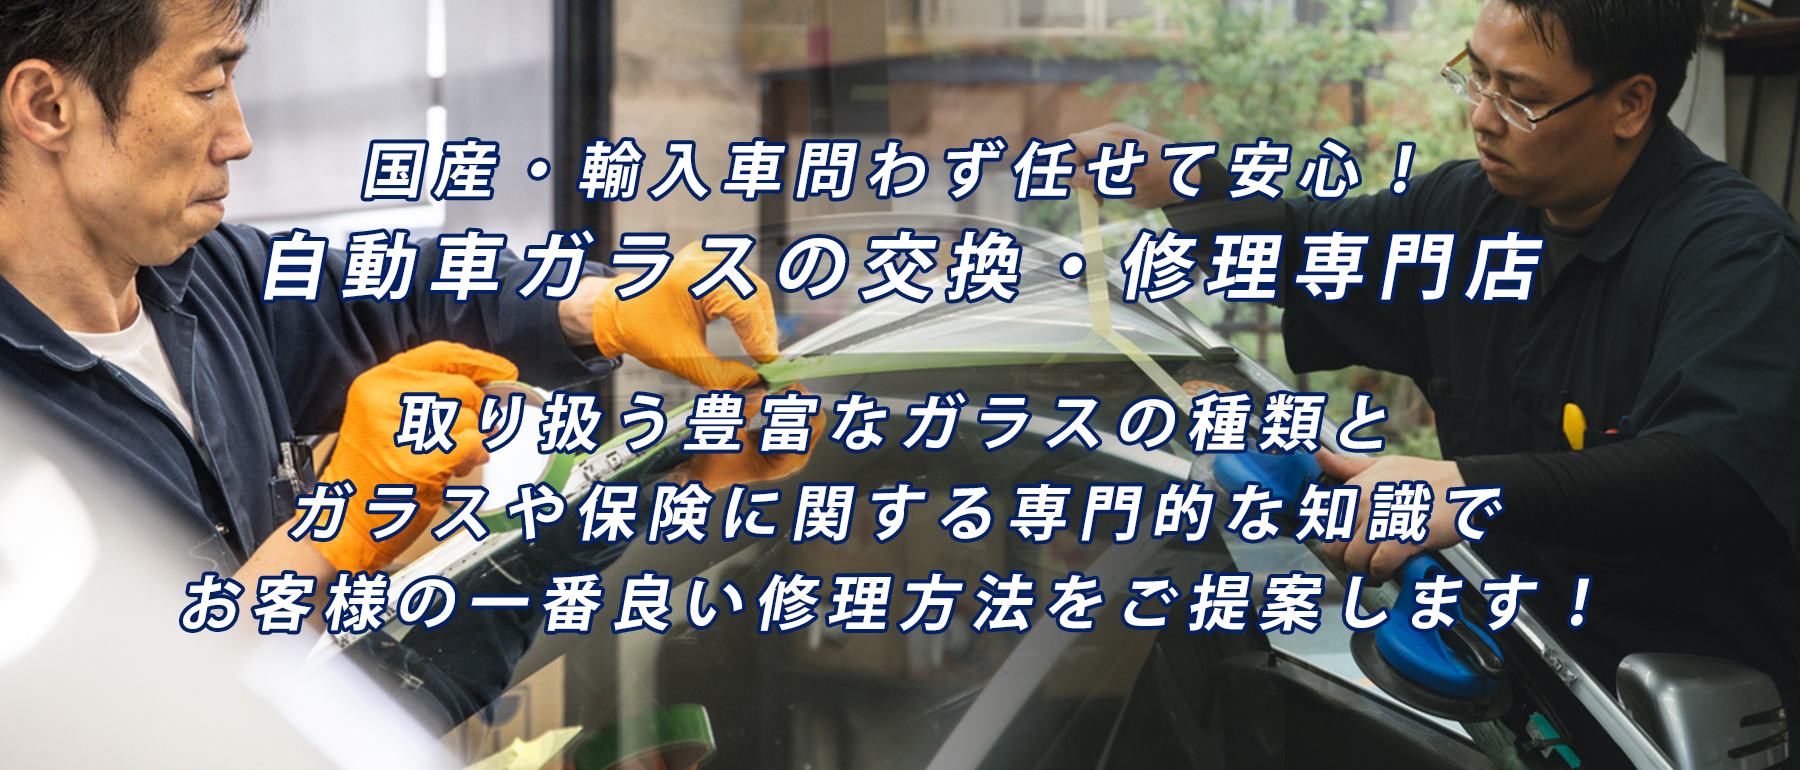 ワカシマガラス  | あらゆる国産・輸入車のガラス交換・修理は三鷹・東京23区のワカシマガラス にお任せください